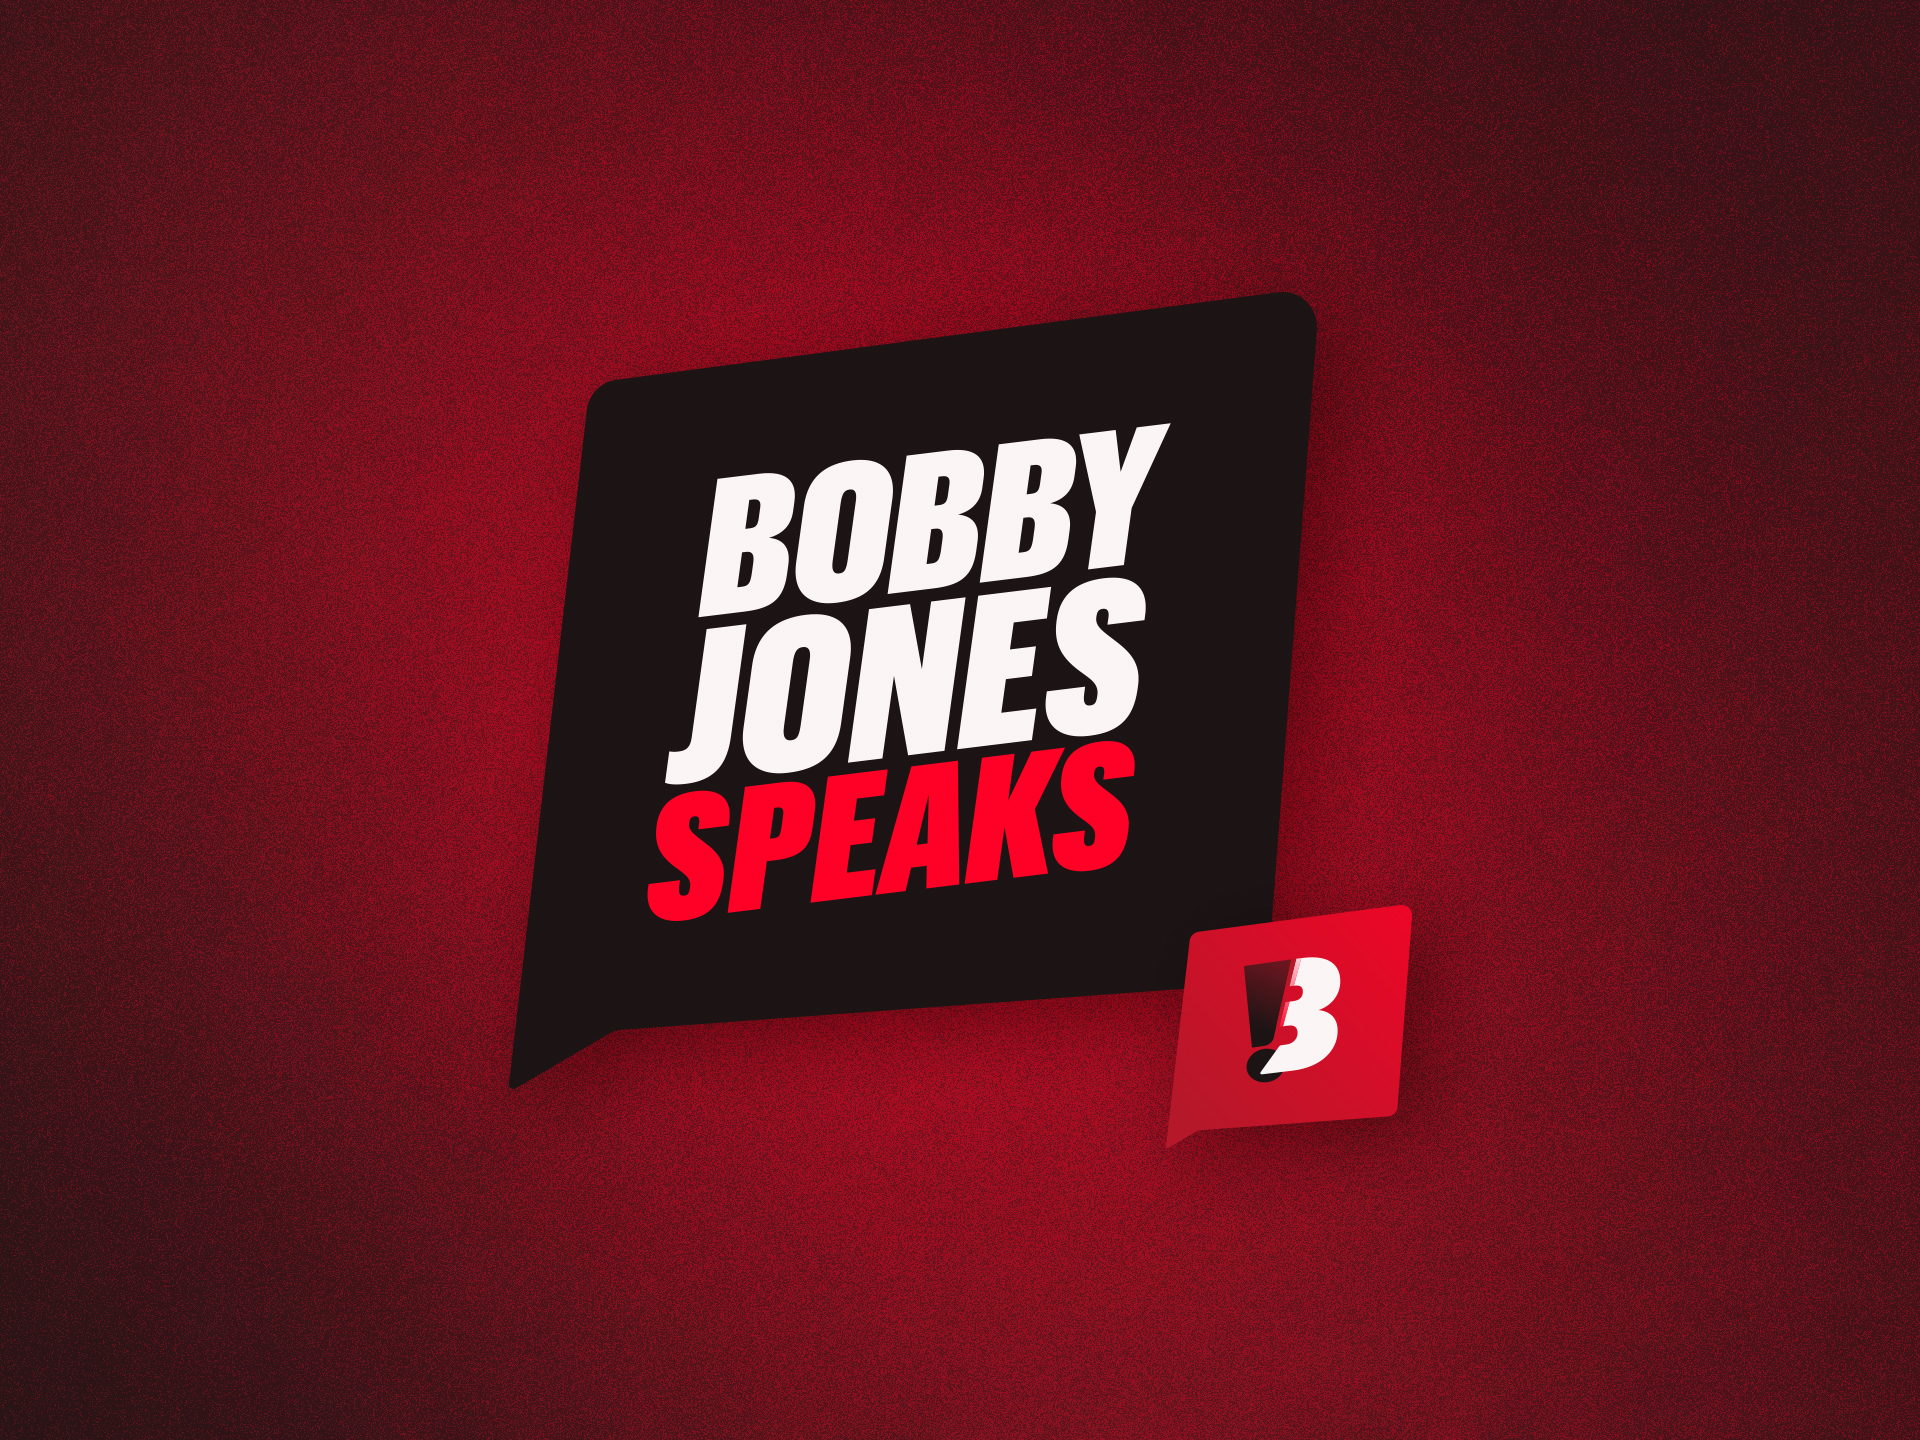 Bobby Jones Speaks by Zach Fonville on Dribbble